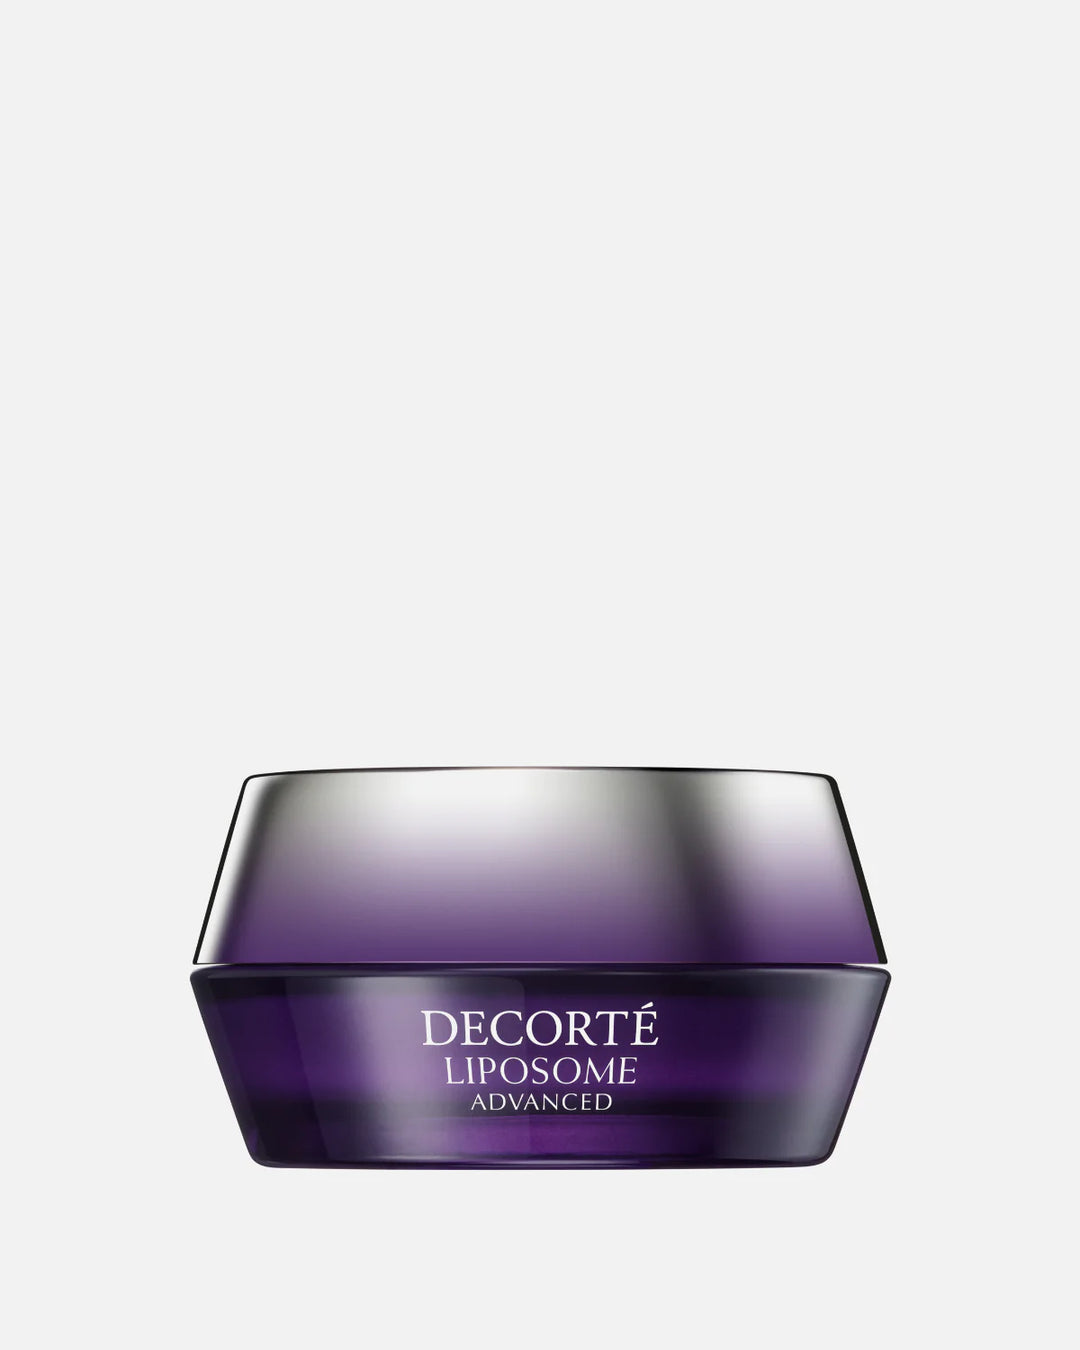 DECORTE Liposome Advanced Repair Cream 1.7 oz. / 50 mL